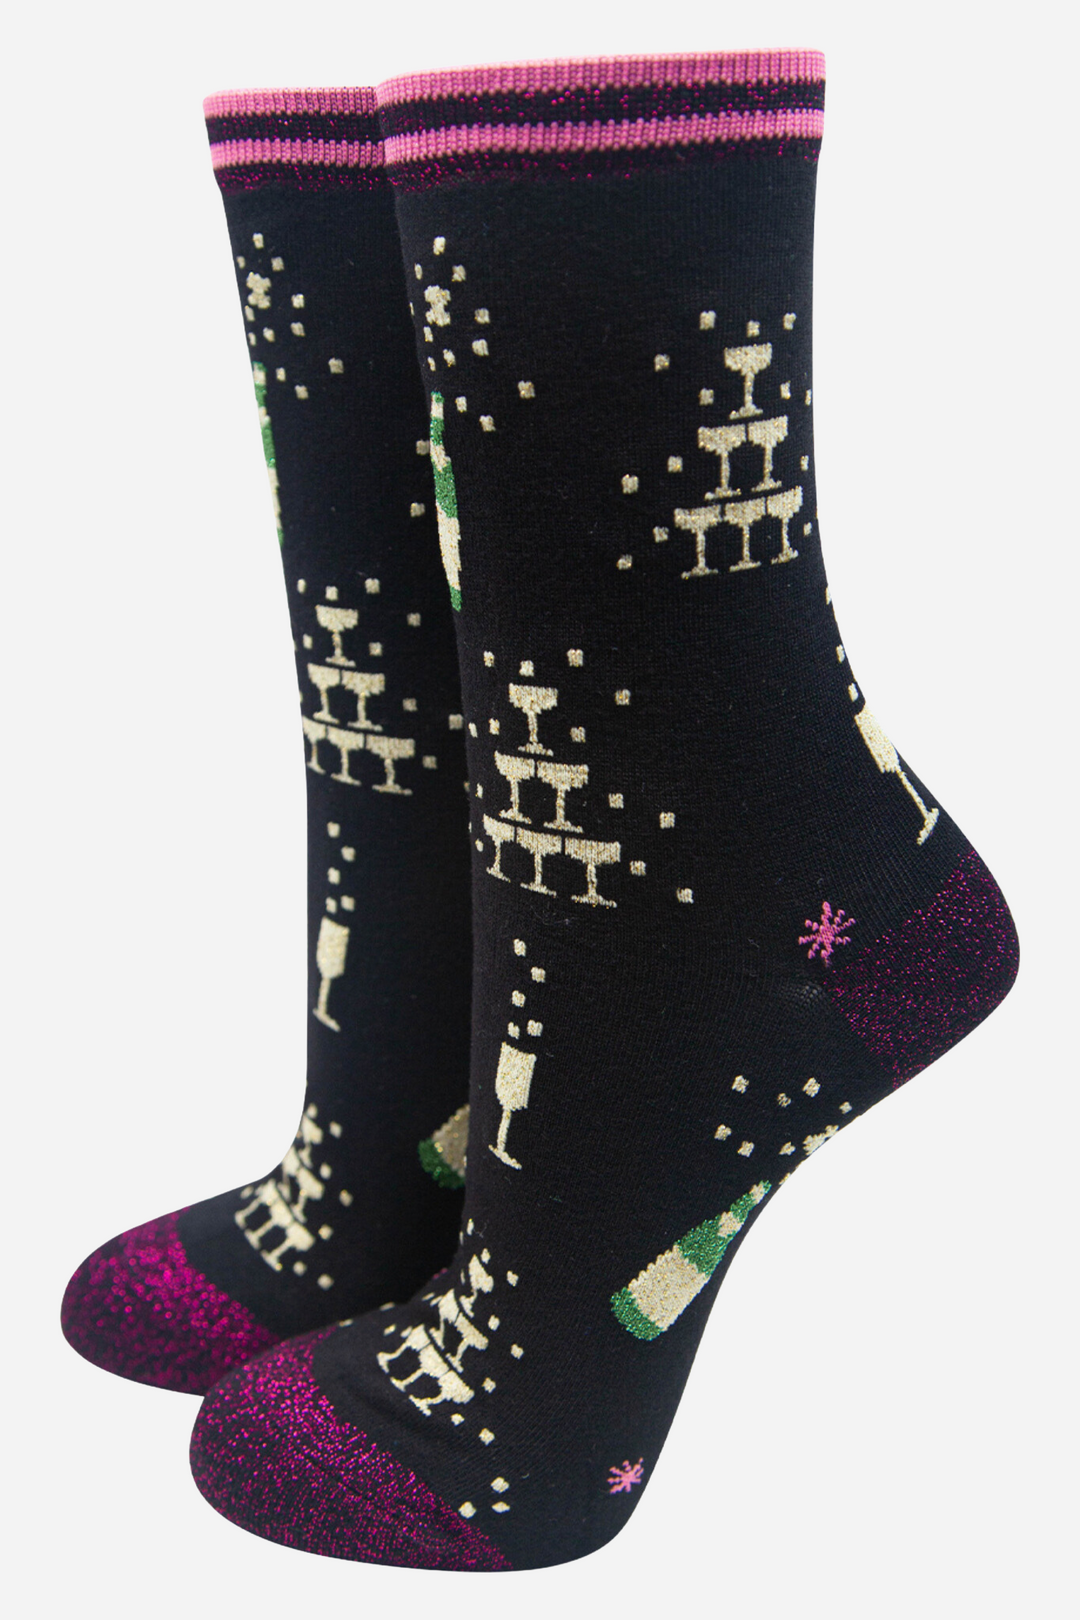 Women's Bamboo Christmas Socks Black Glitter Champange Cocktail Gift Set